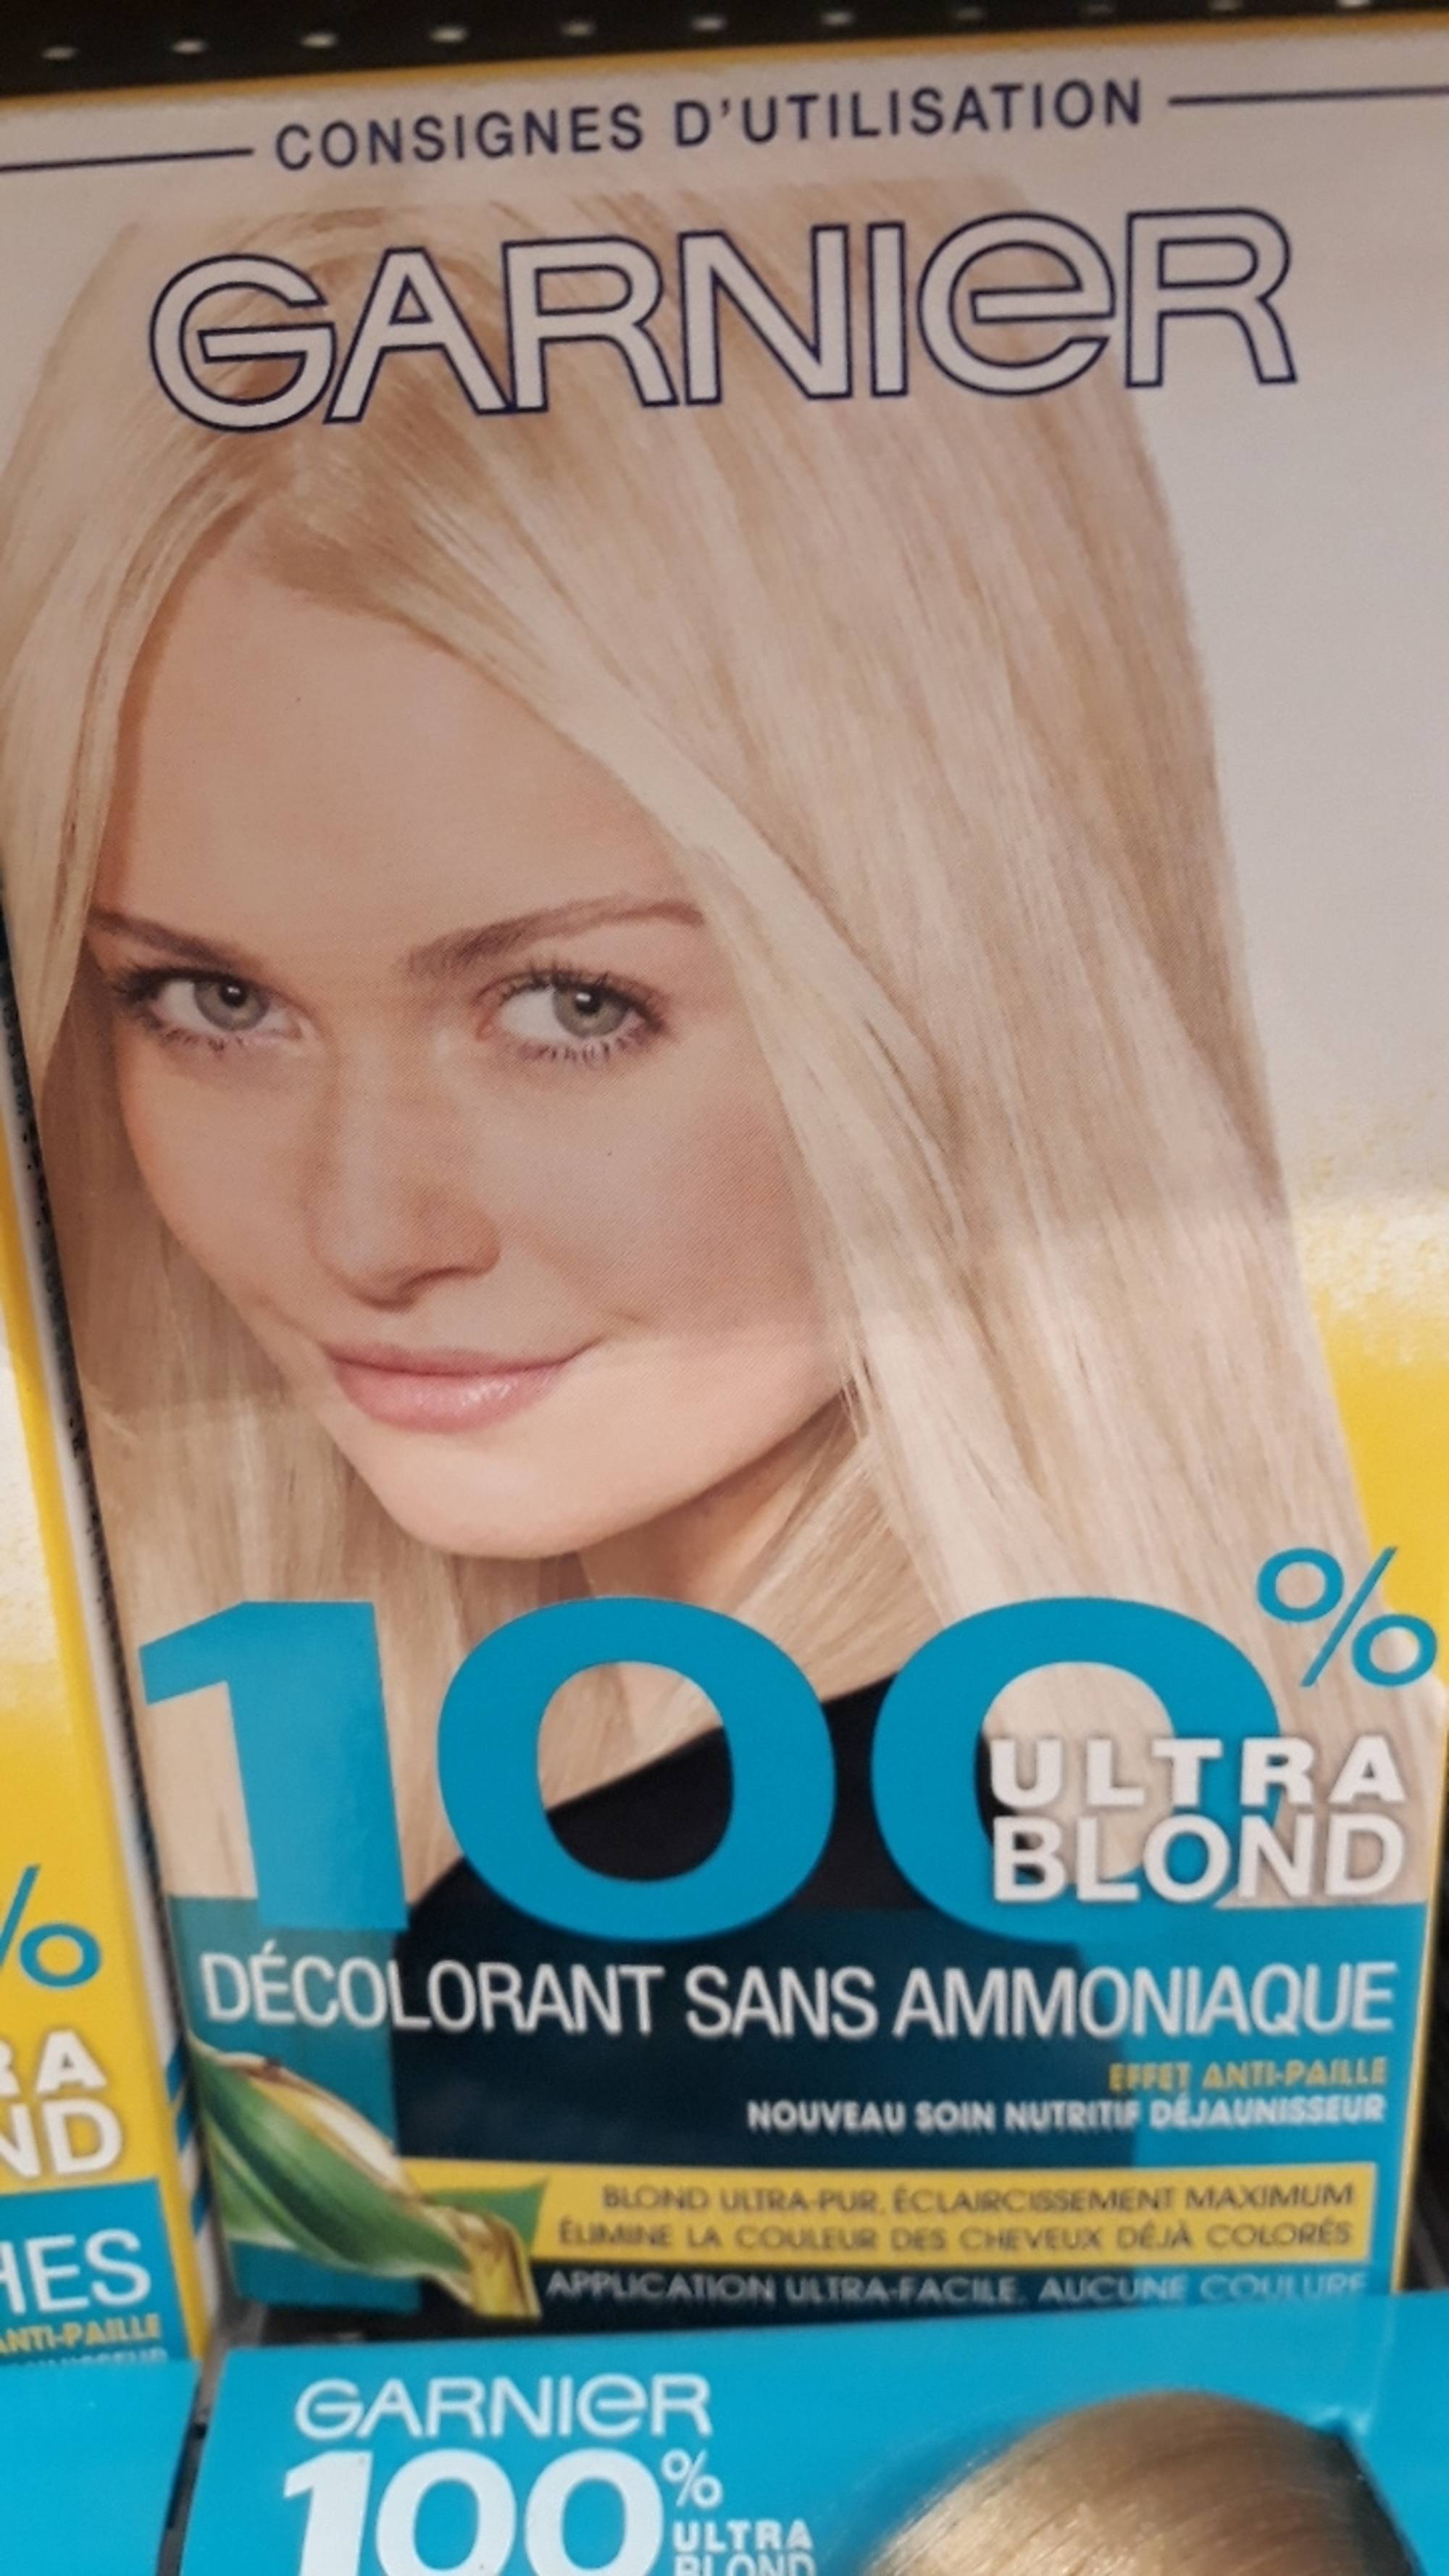 GARNIER - 100 % Ultra blond - Décolorant sans ammoniaque